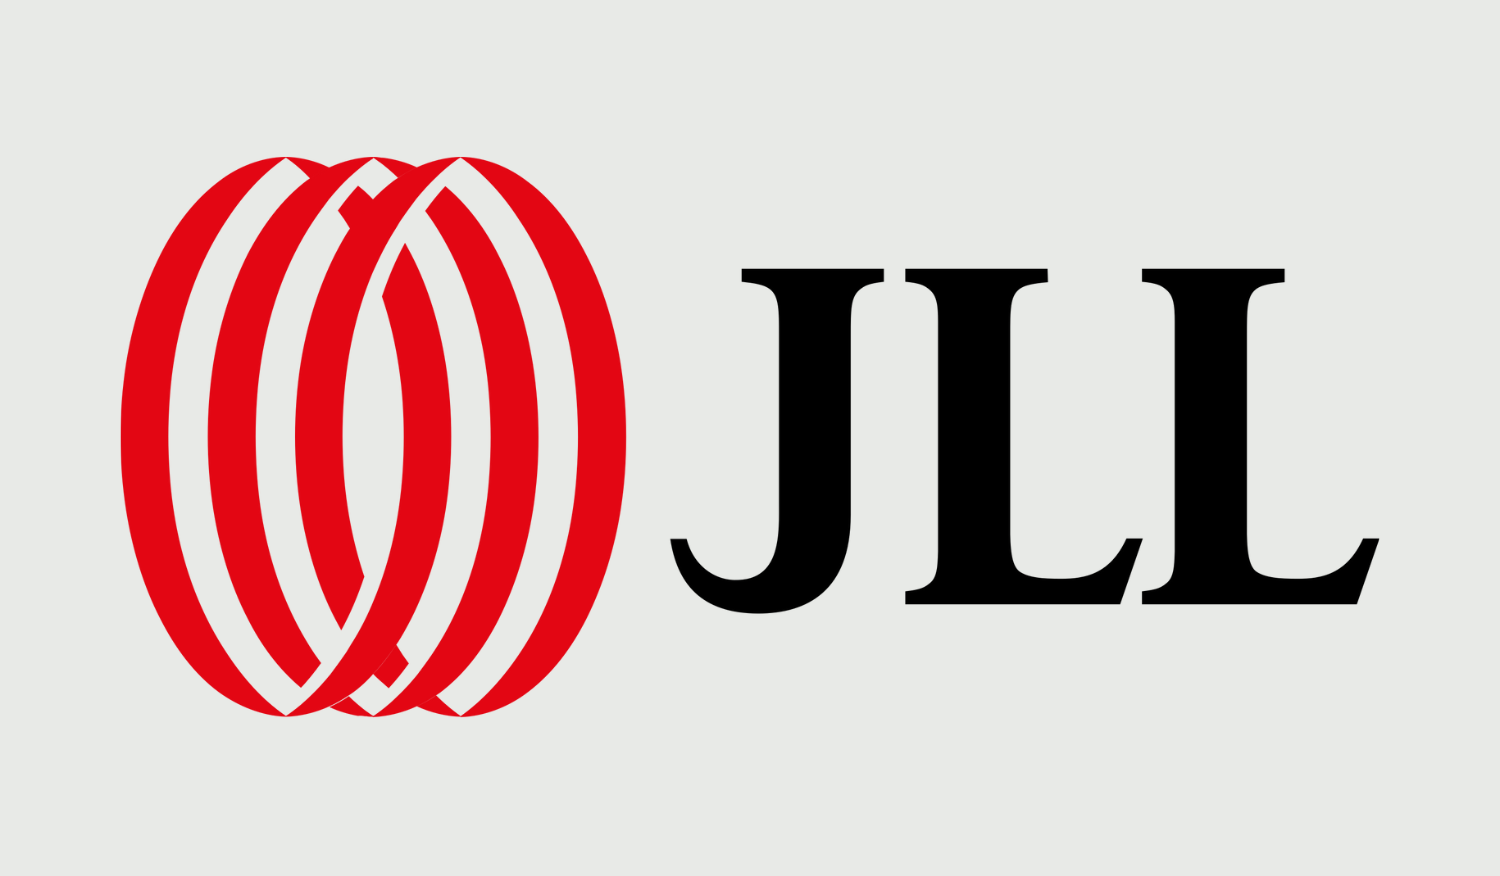 jll logo